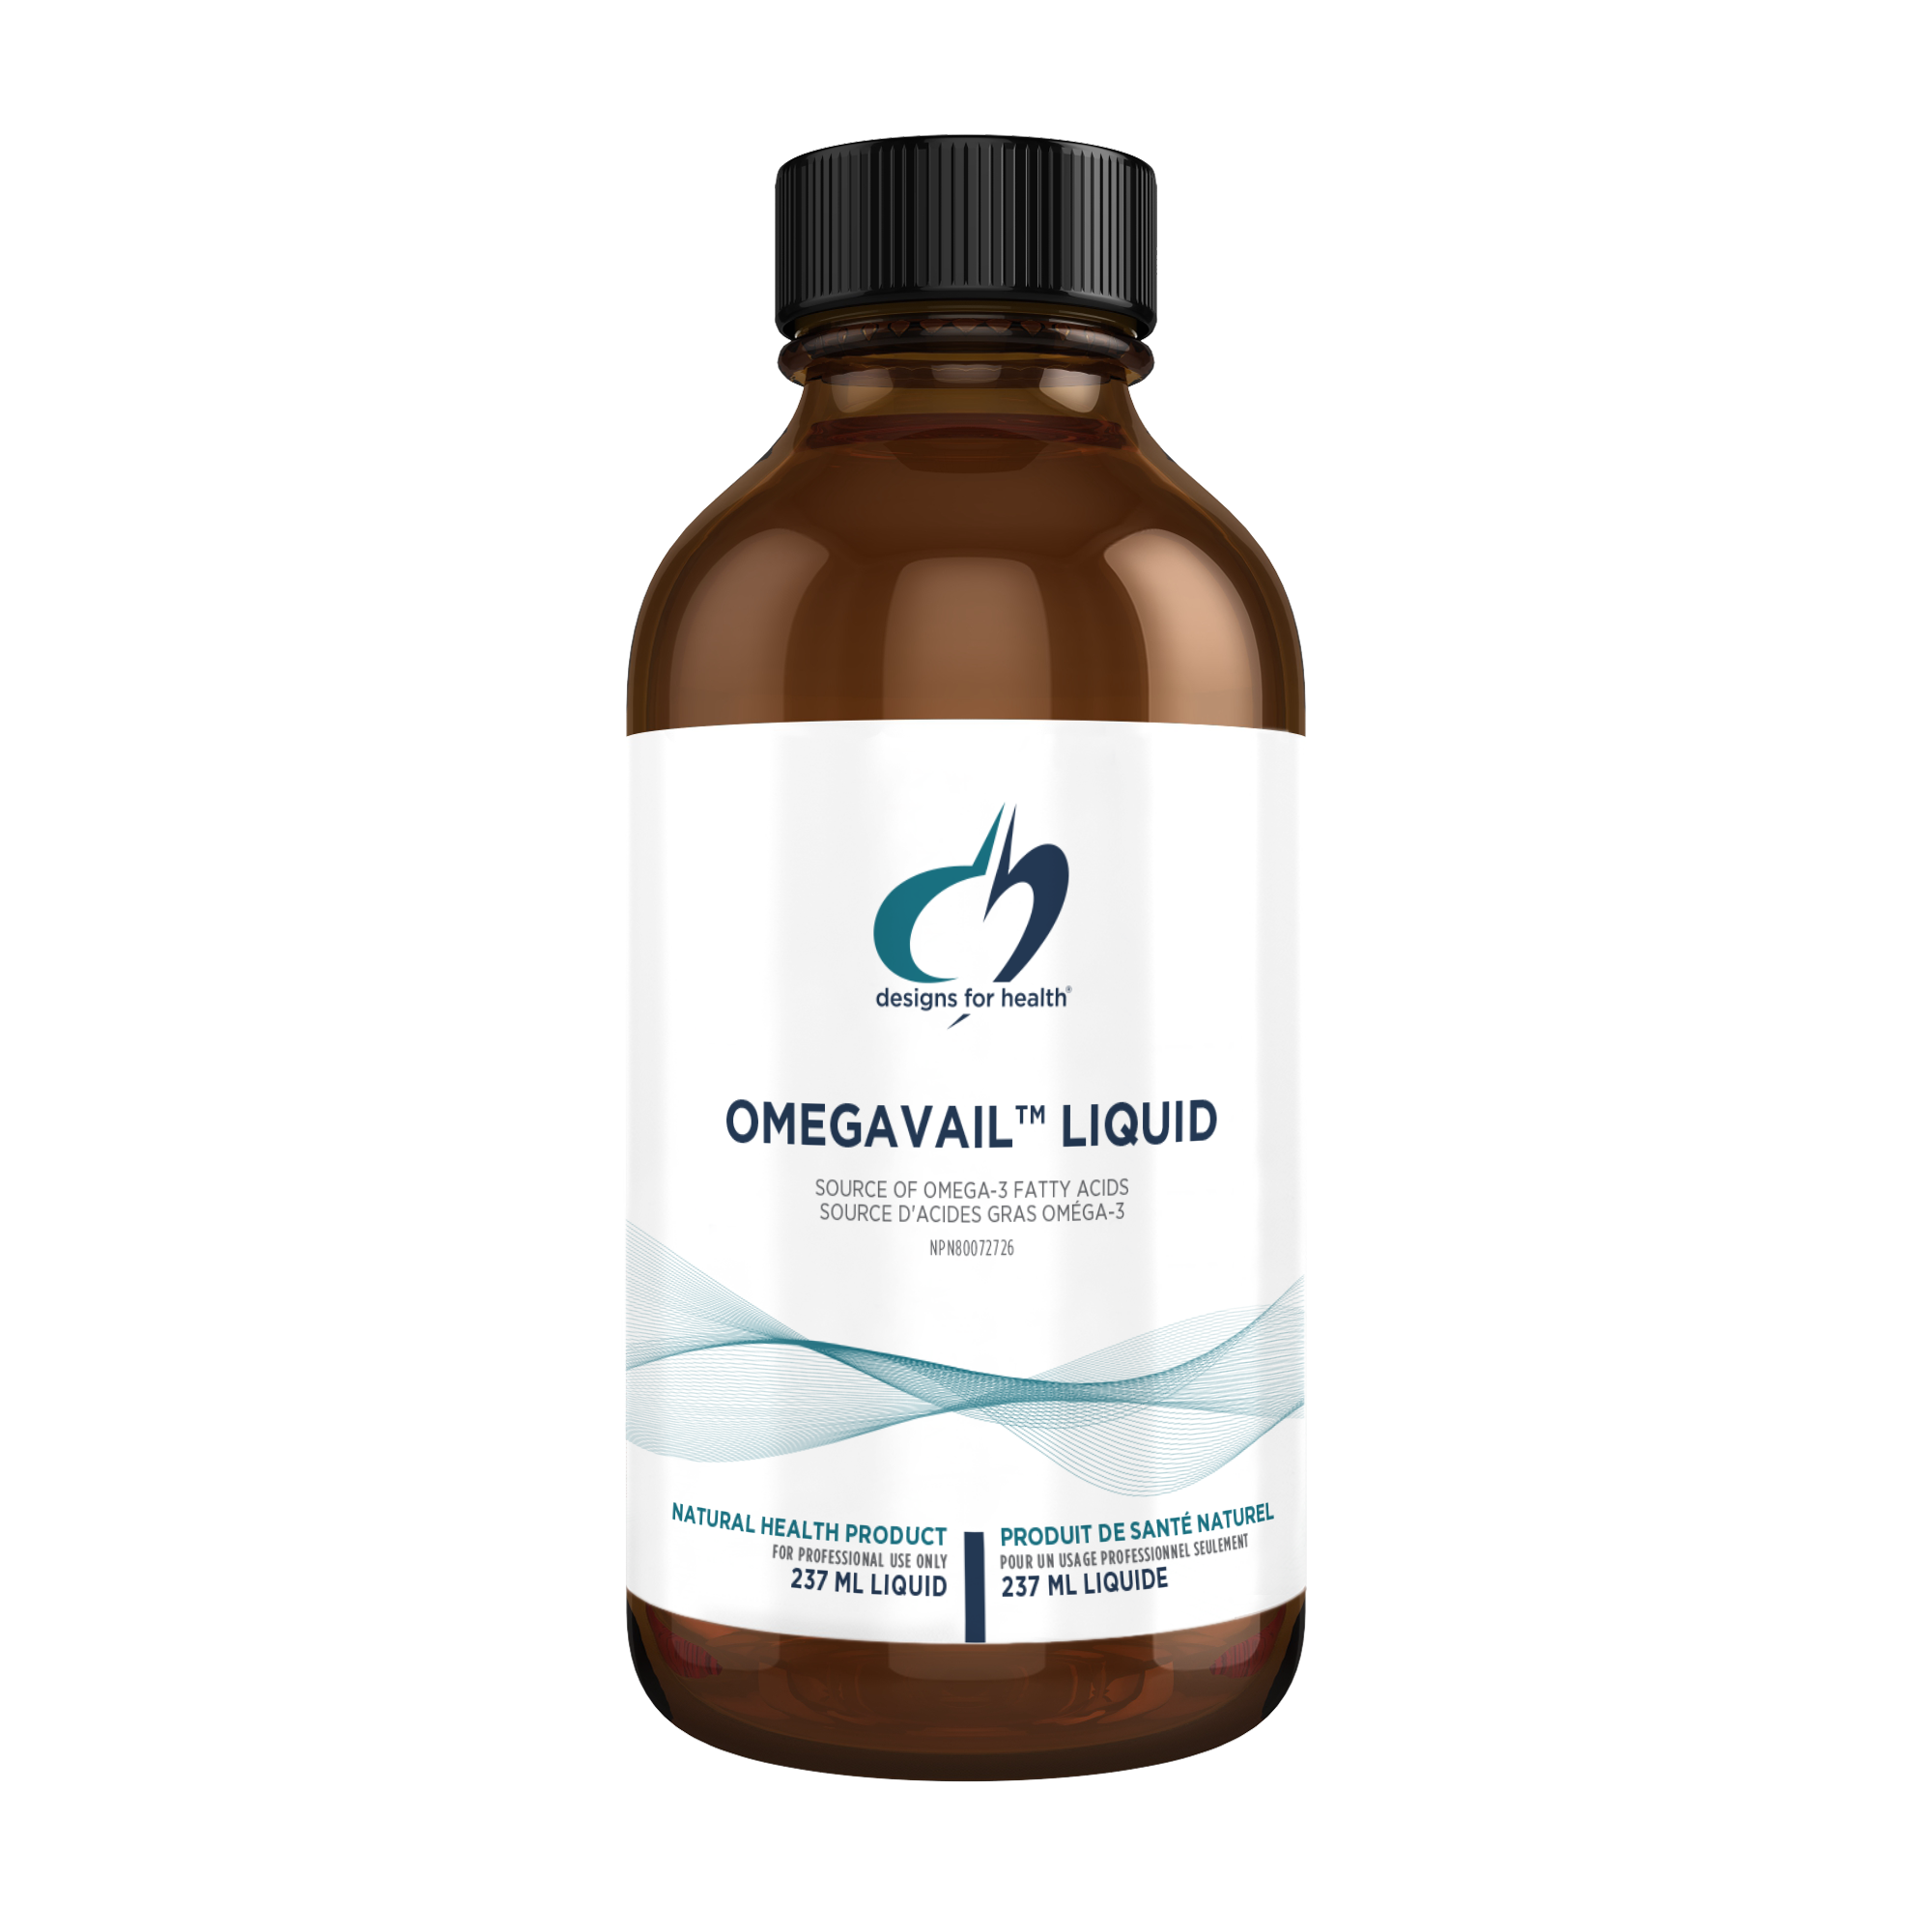 Omegavail-Liquid-Designs-For-Health